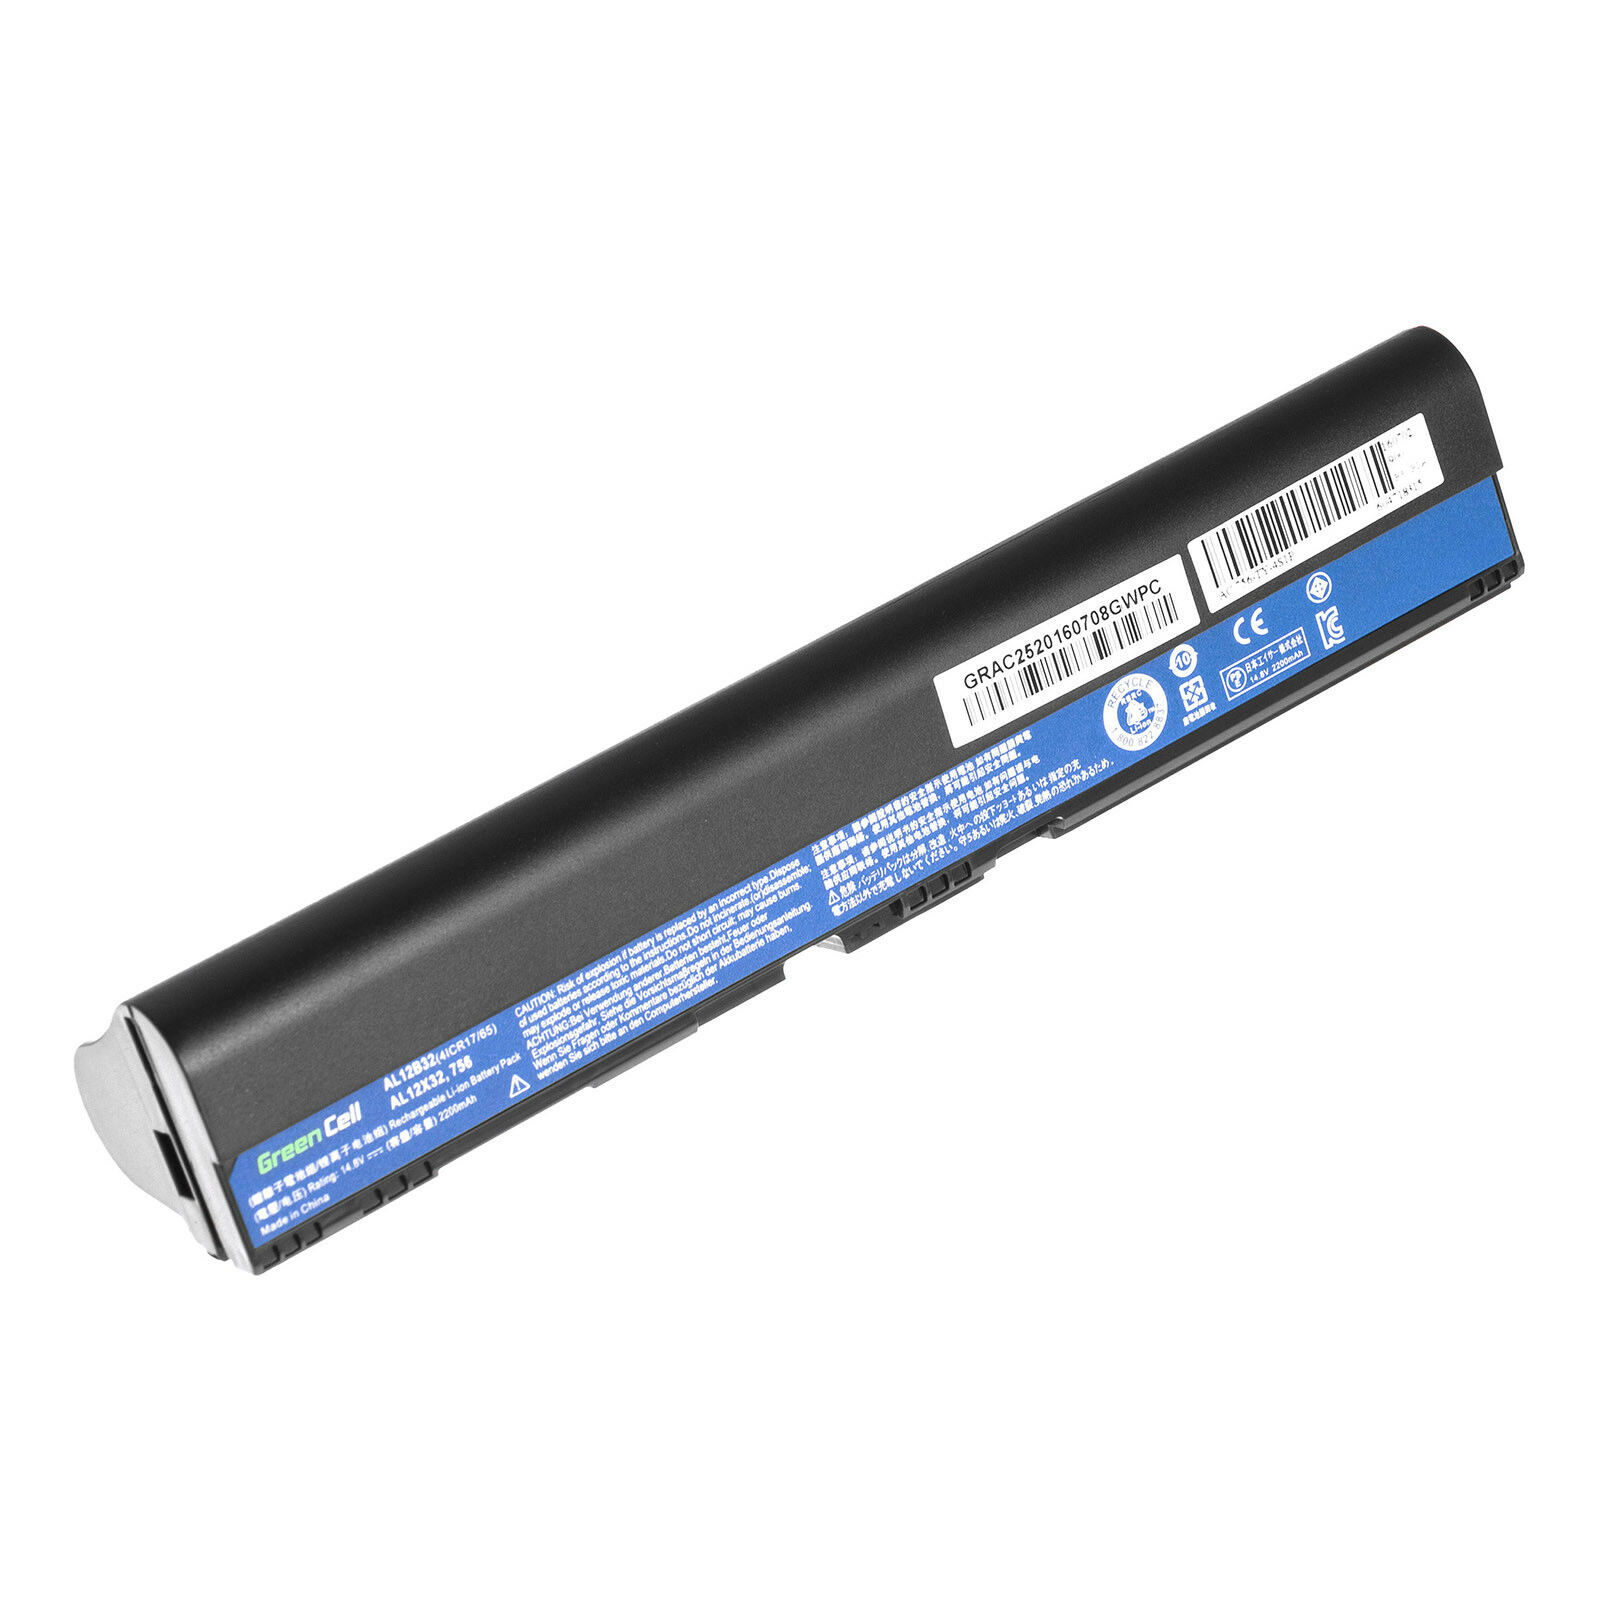 Bateria para ACER Aspire C710,Aspire One AO725,AO756,AOV5,V5,V5-171